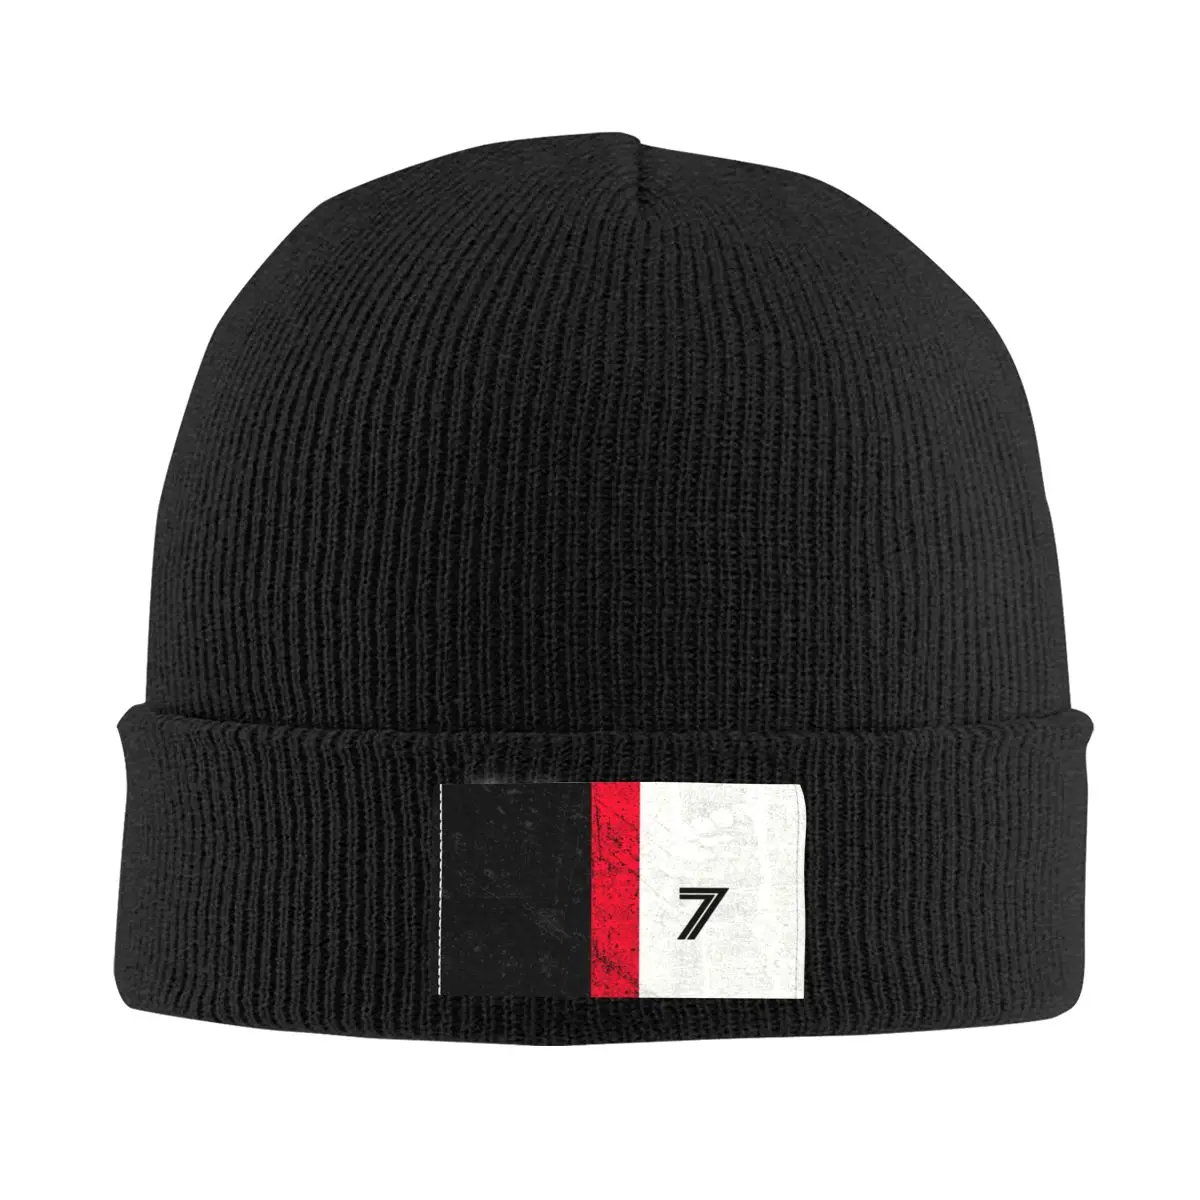 

Шапочки для футбола Number 7, шапки, шапки унисекс, зимняя теплая вязаная шапка для мужчин и женщин, взрослая футбольная шапка, шапки, уличная Лыжная шапка